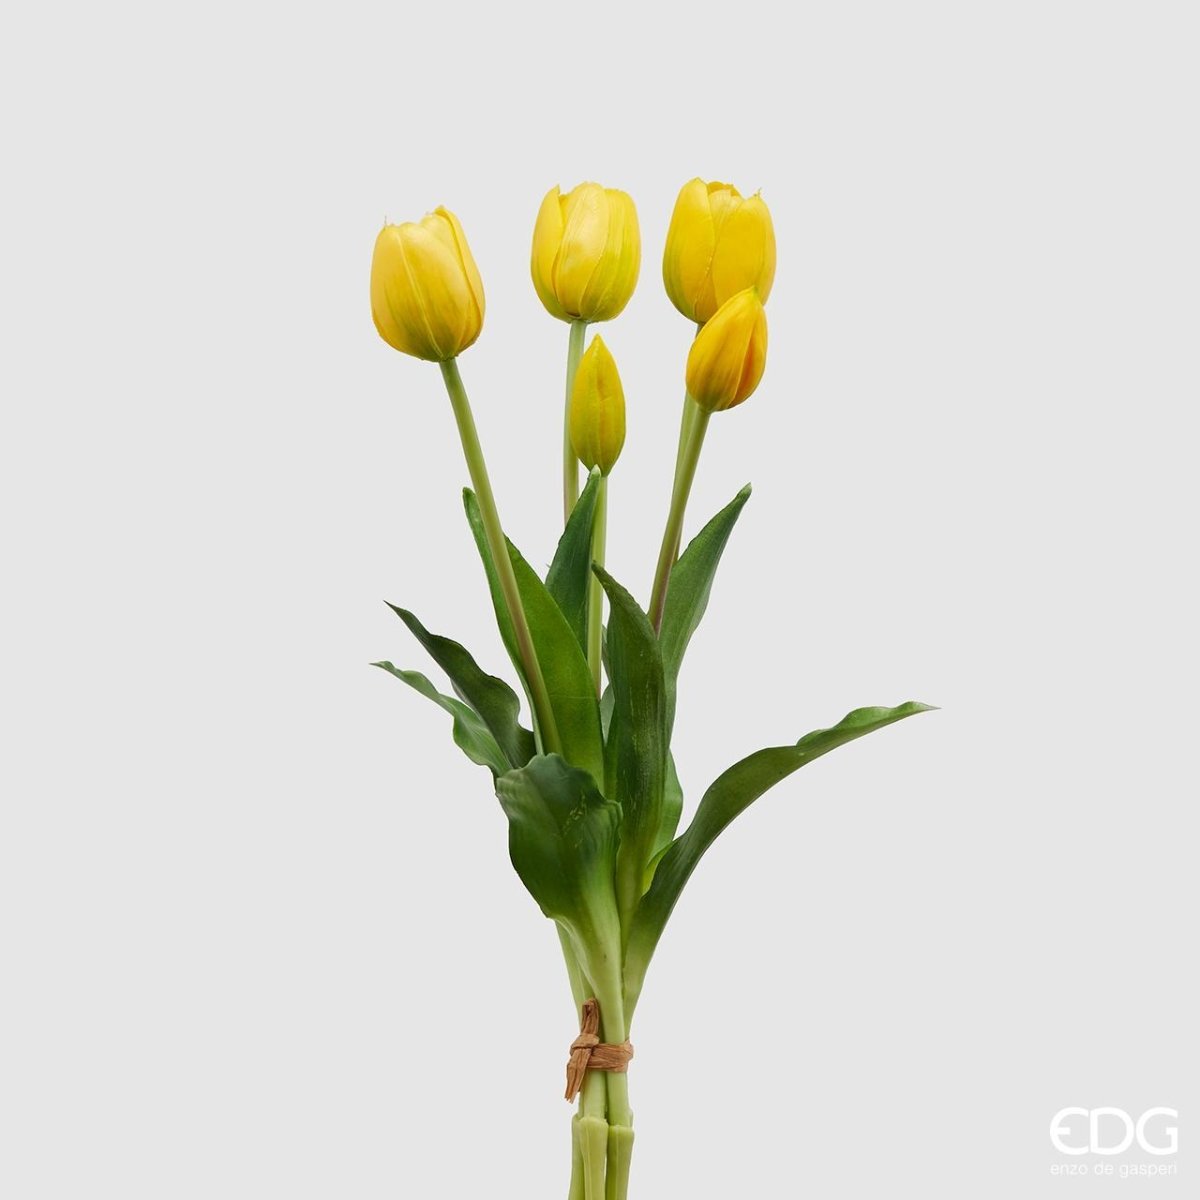 Edg - mazzo di tulipano giallo | rohome - Rohome